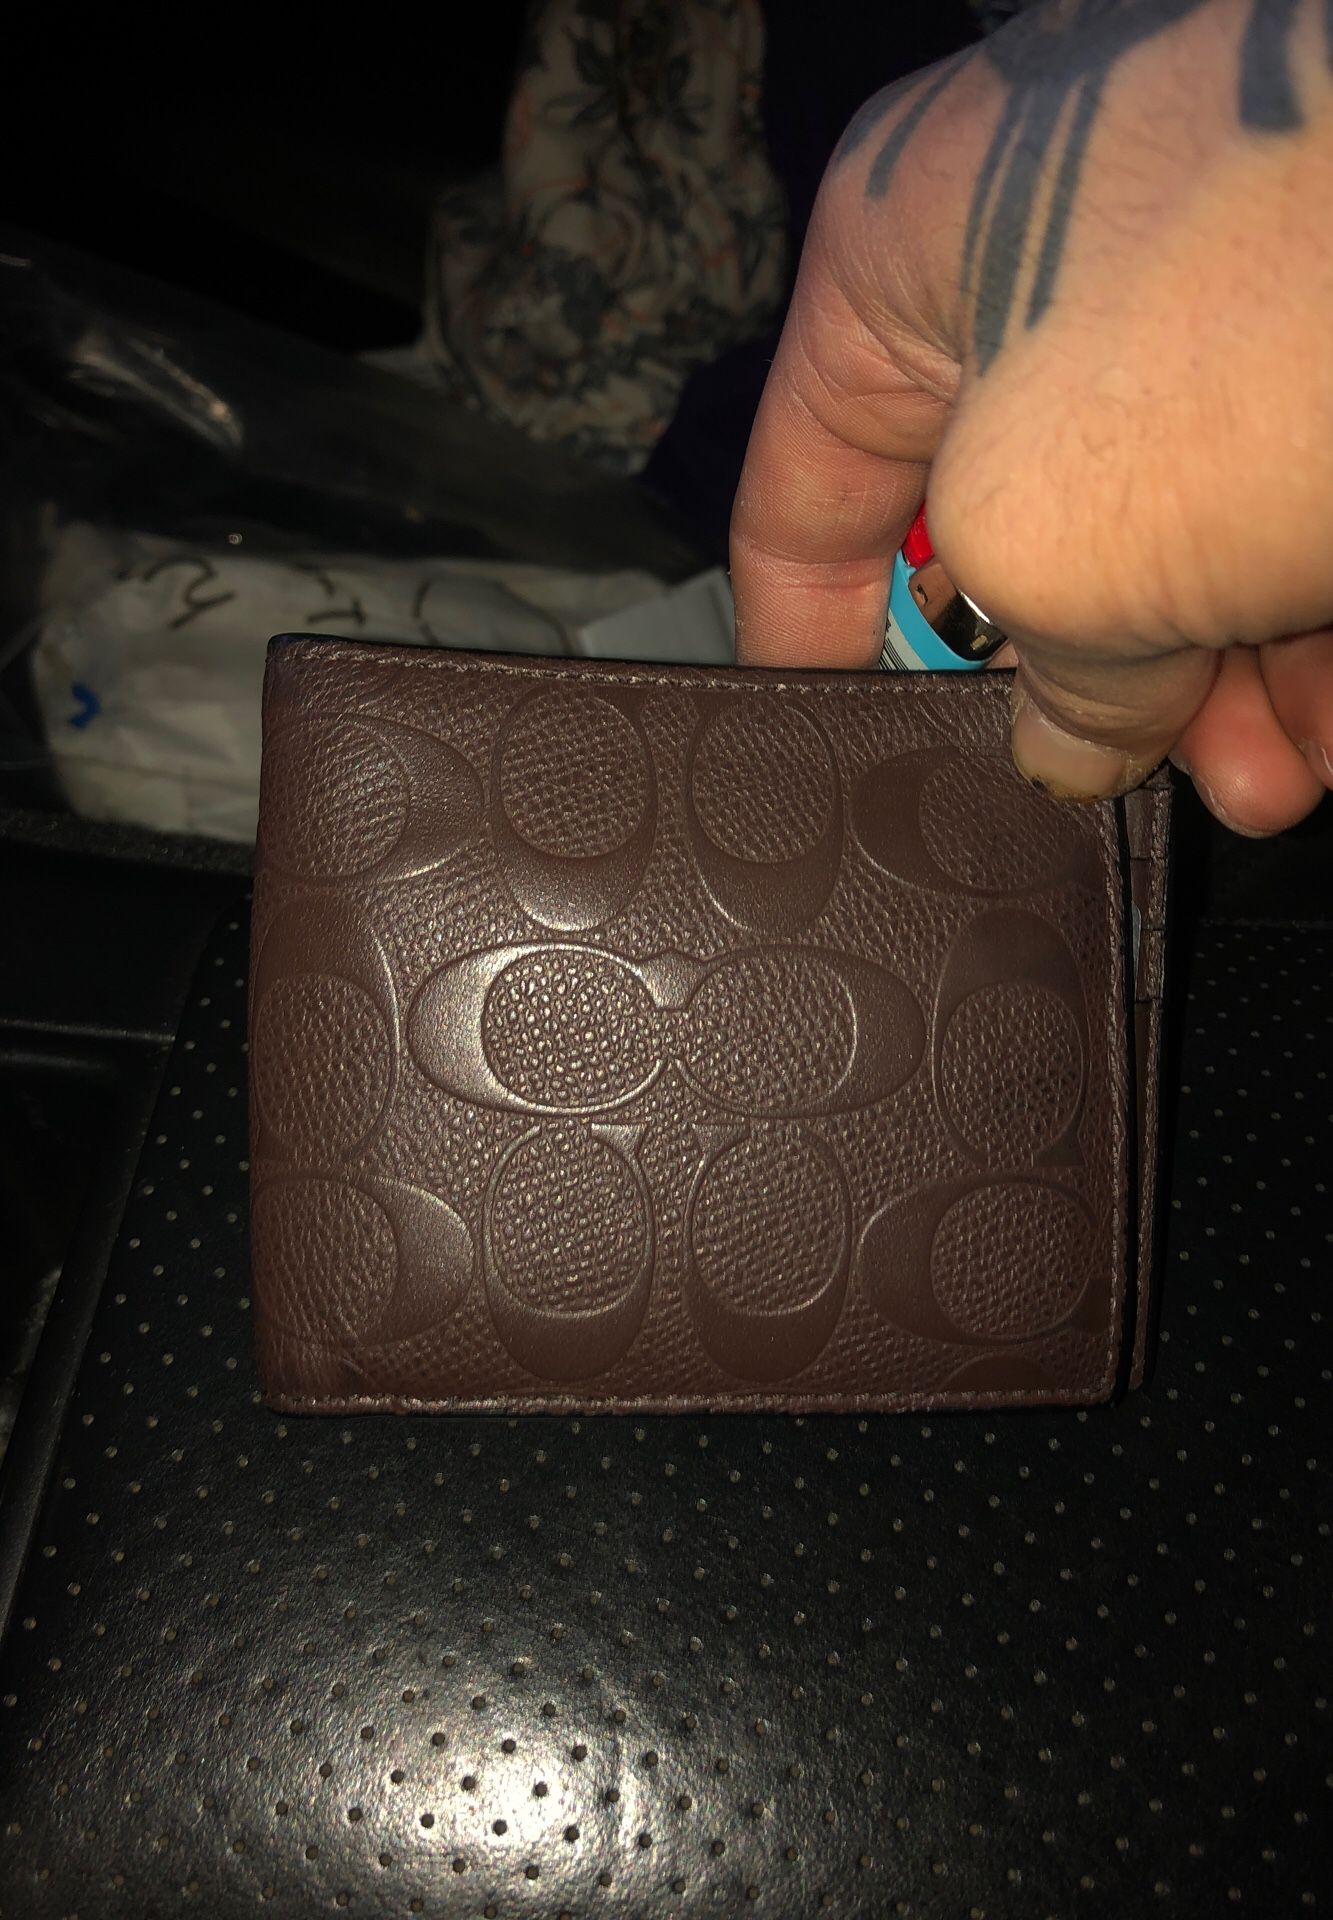 Coach wallet